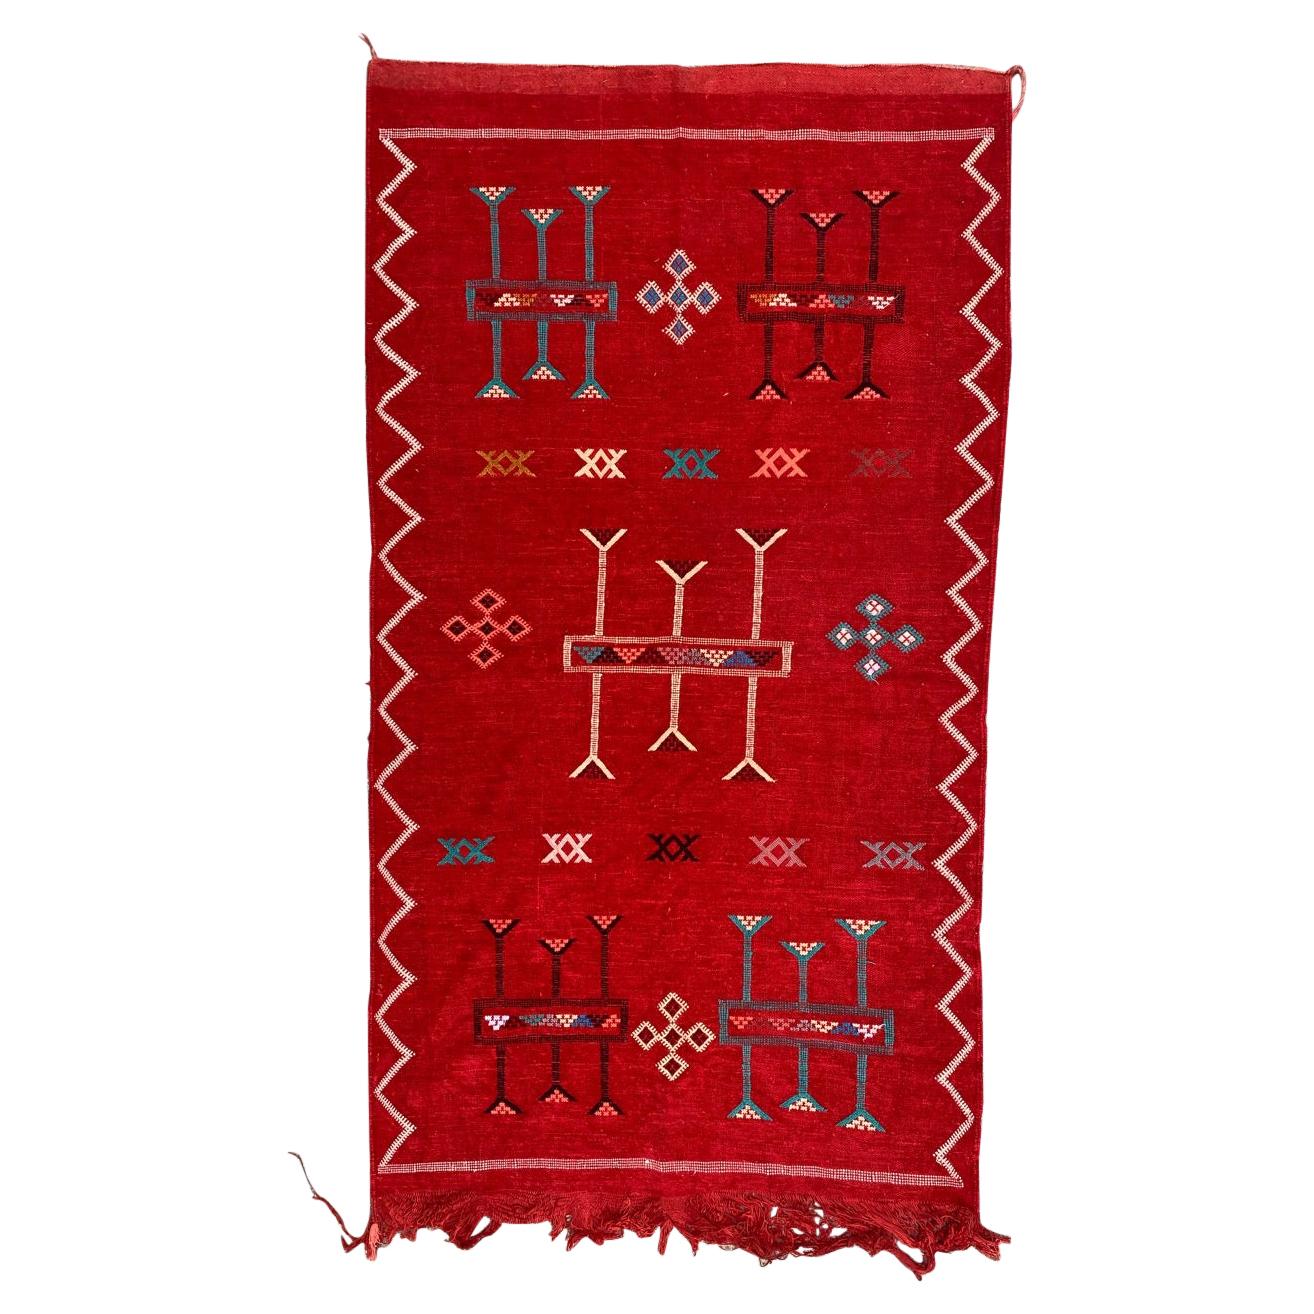 Bobyrug's Nice Vintage Silk and Cotton Moroccan Kilim (Kilim marocain en soie et coton)